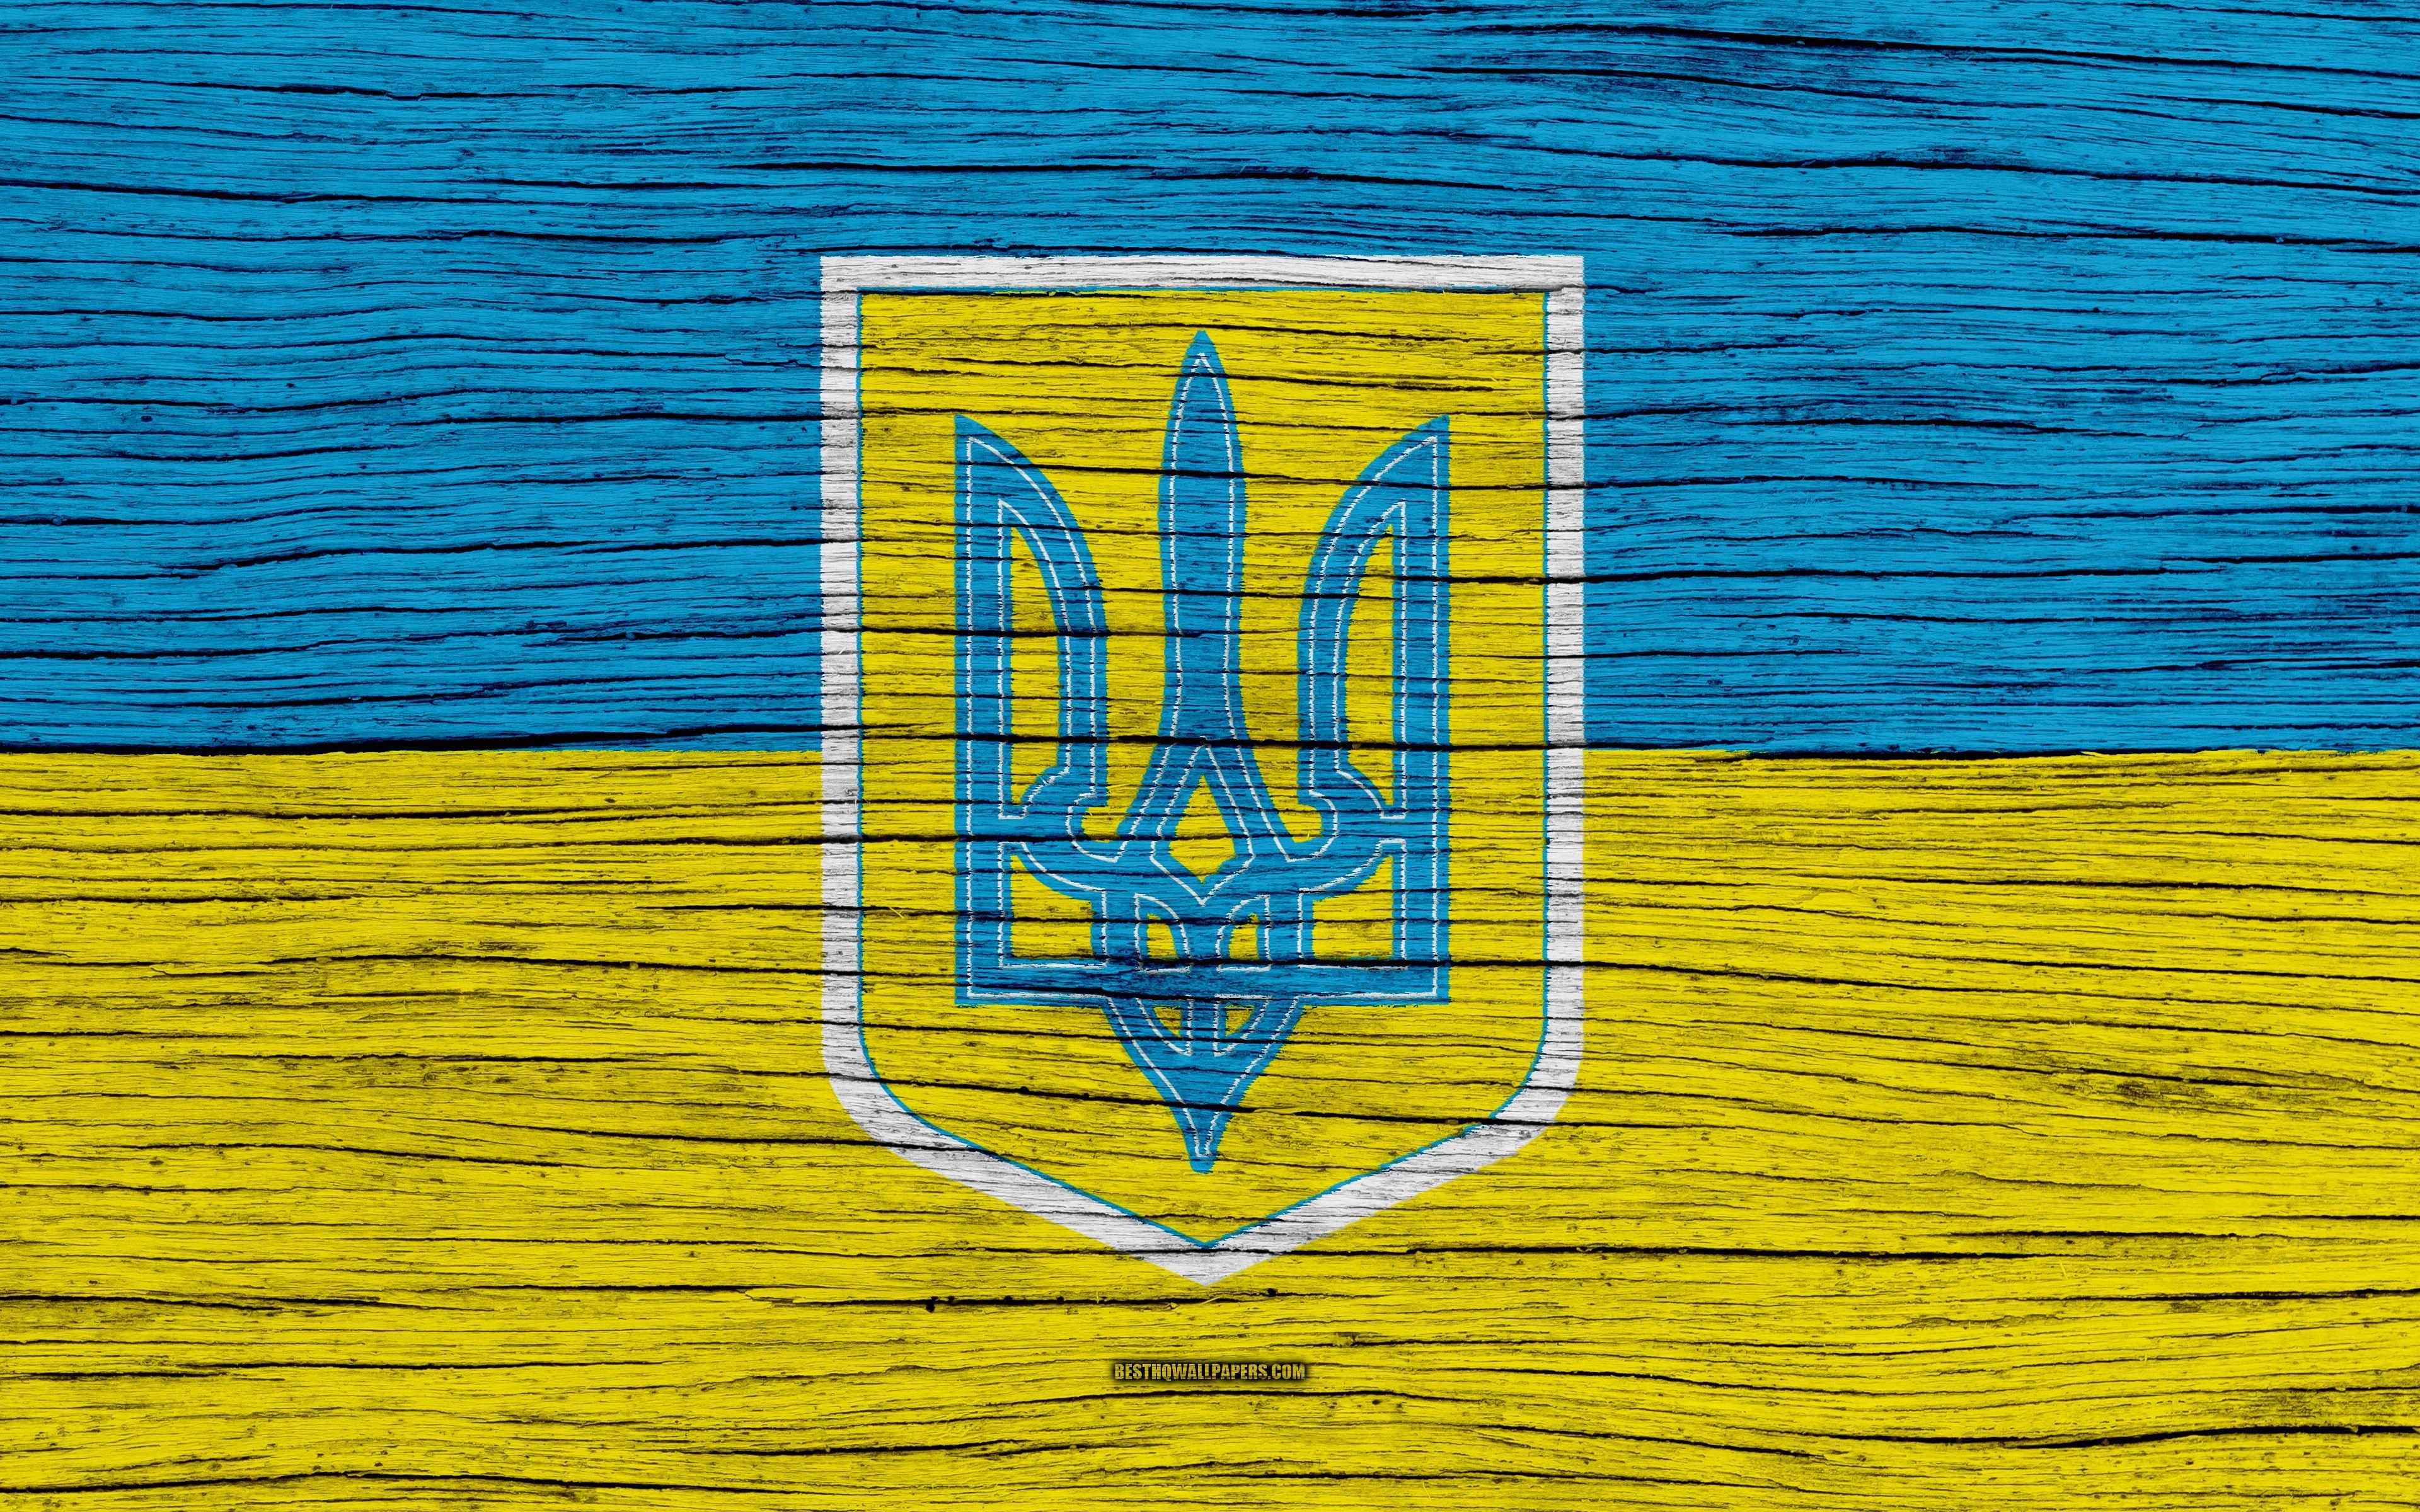 48000 Ukraine Wallpaper Pictures